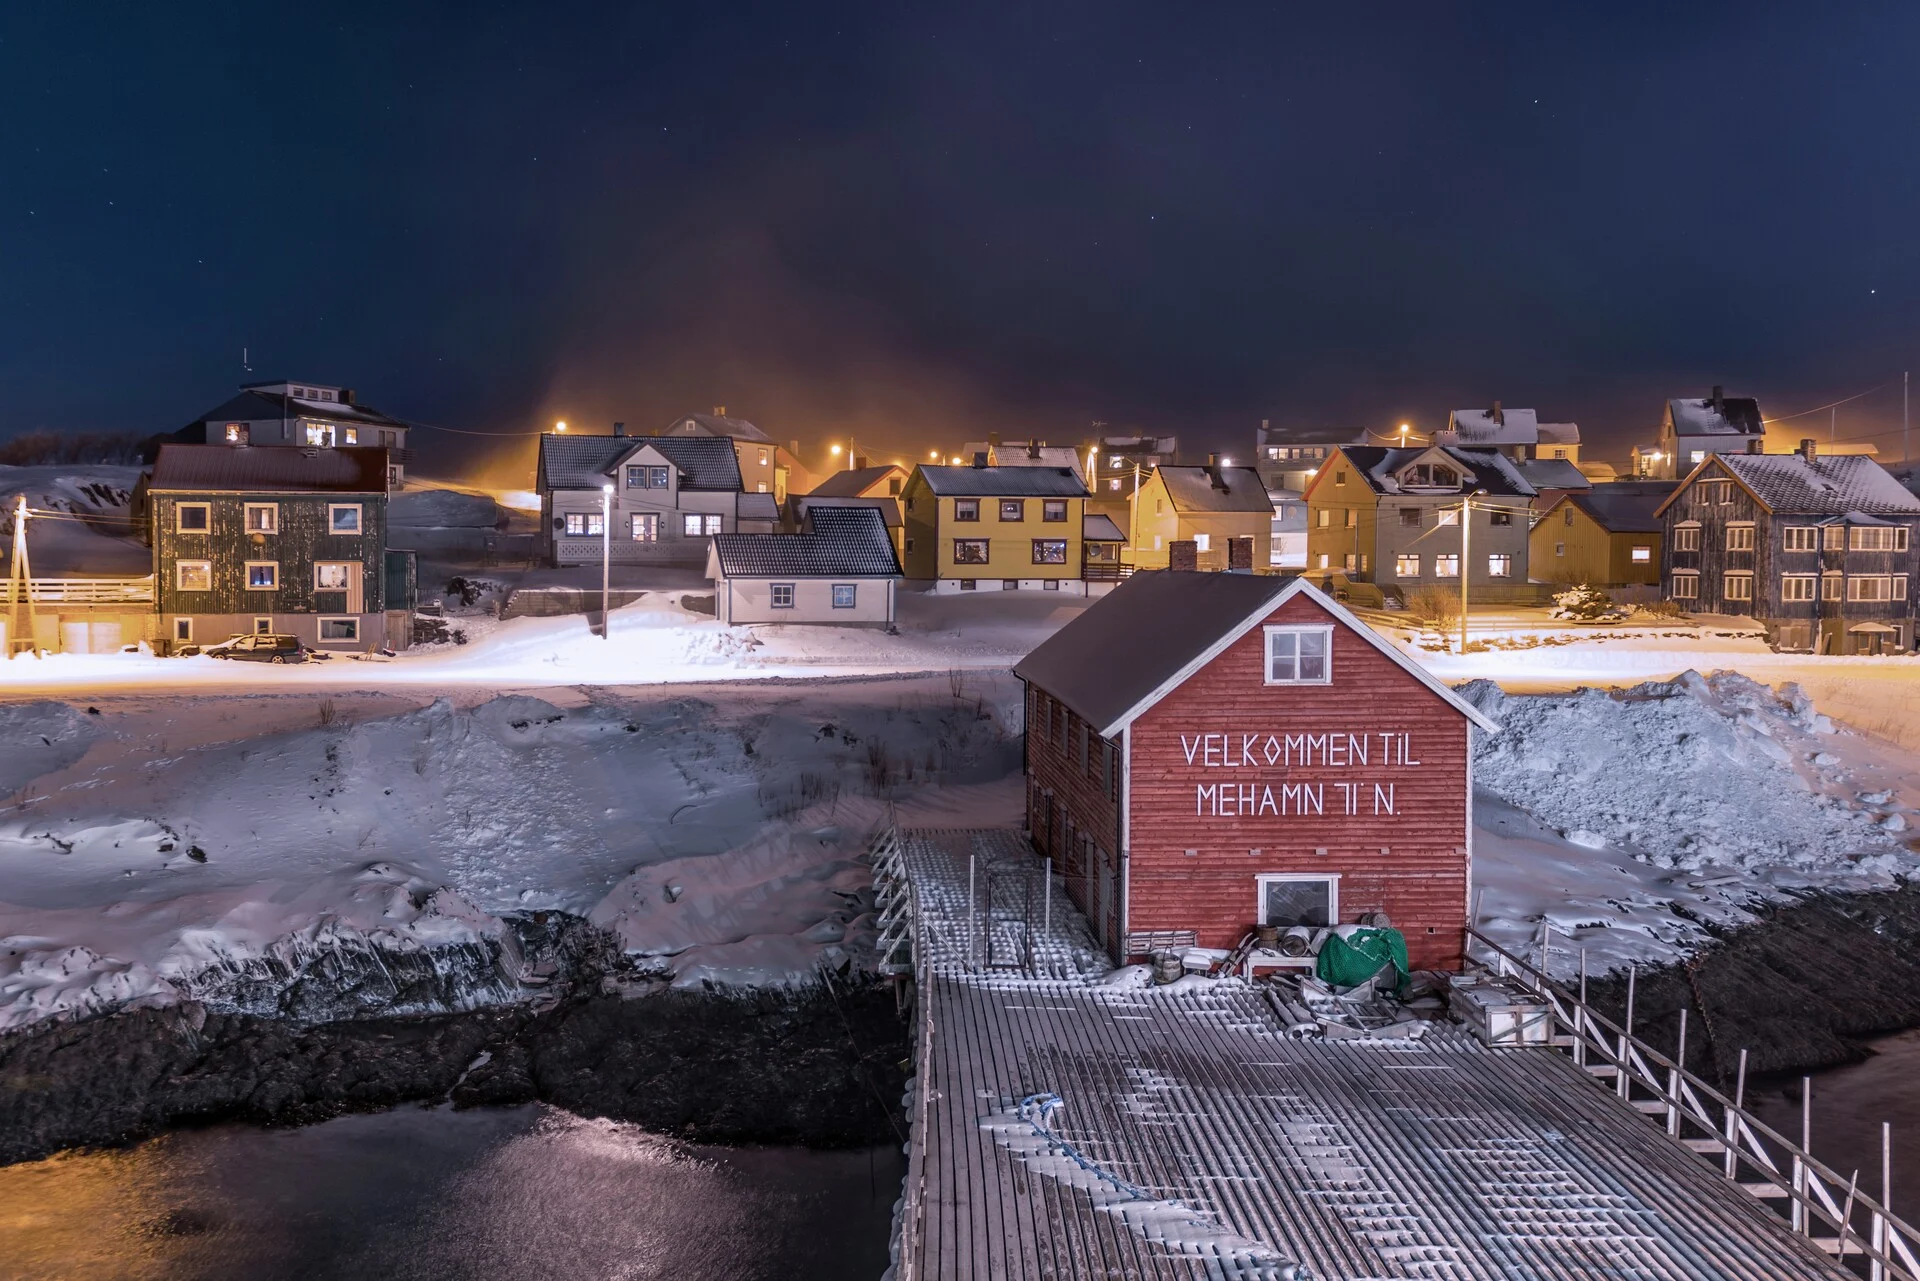 The port of Mehamn in Norway